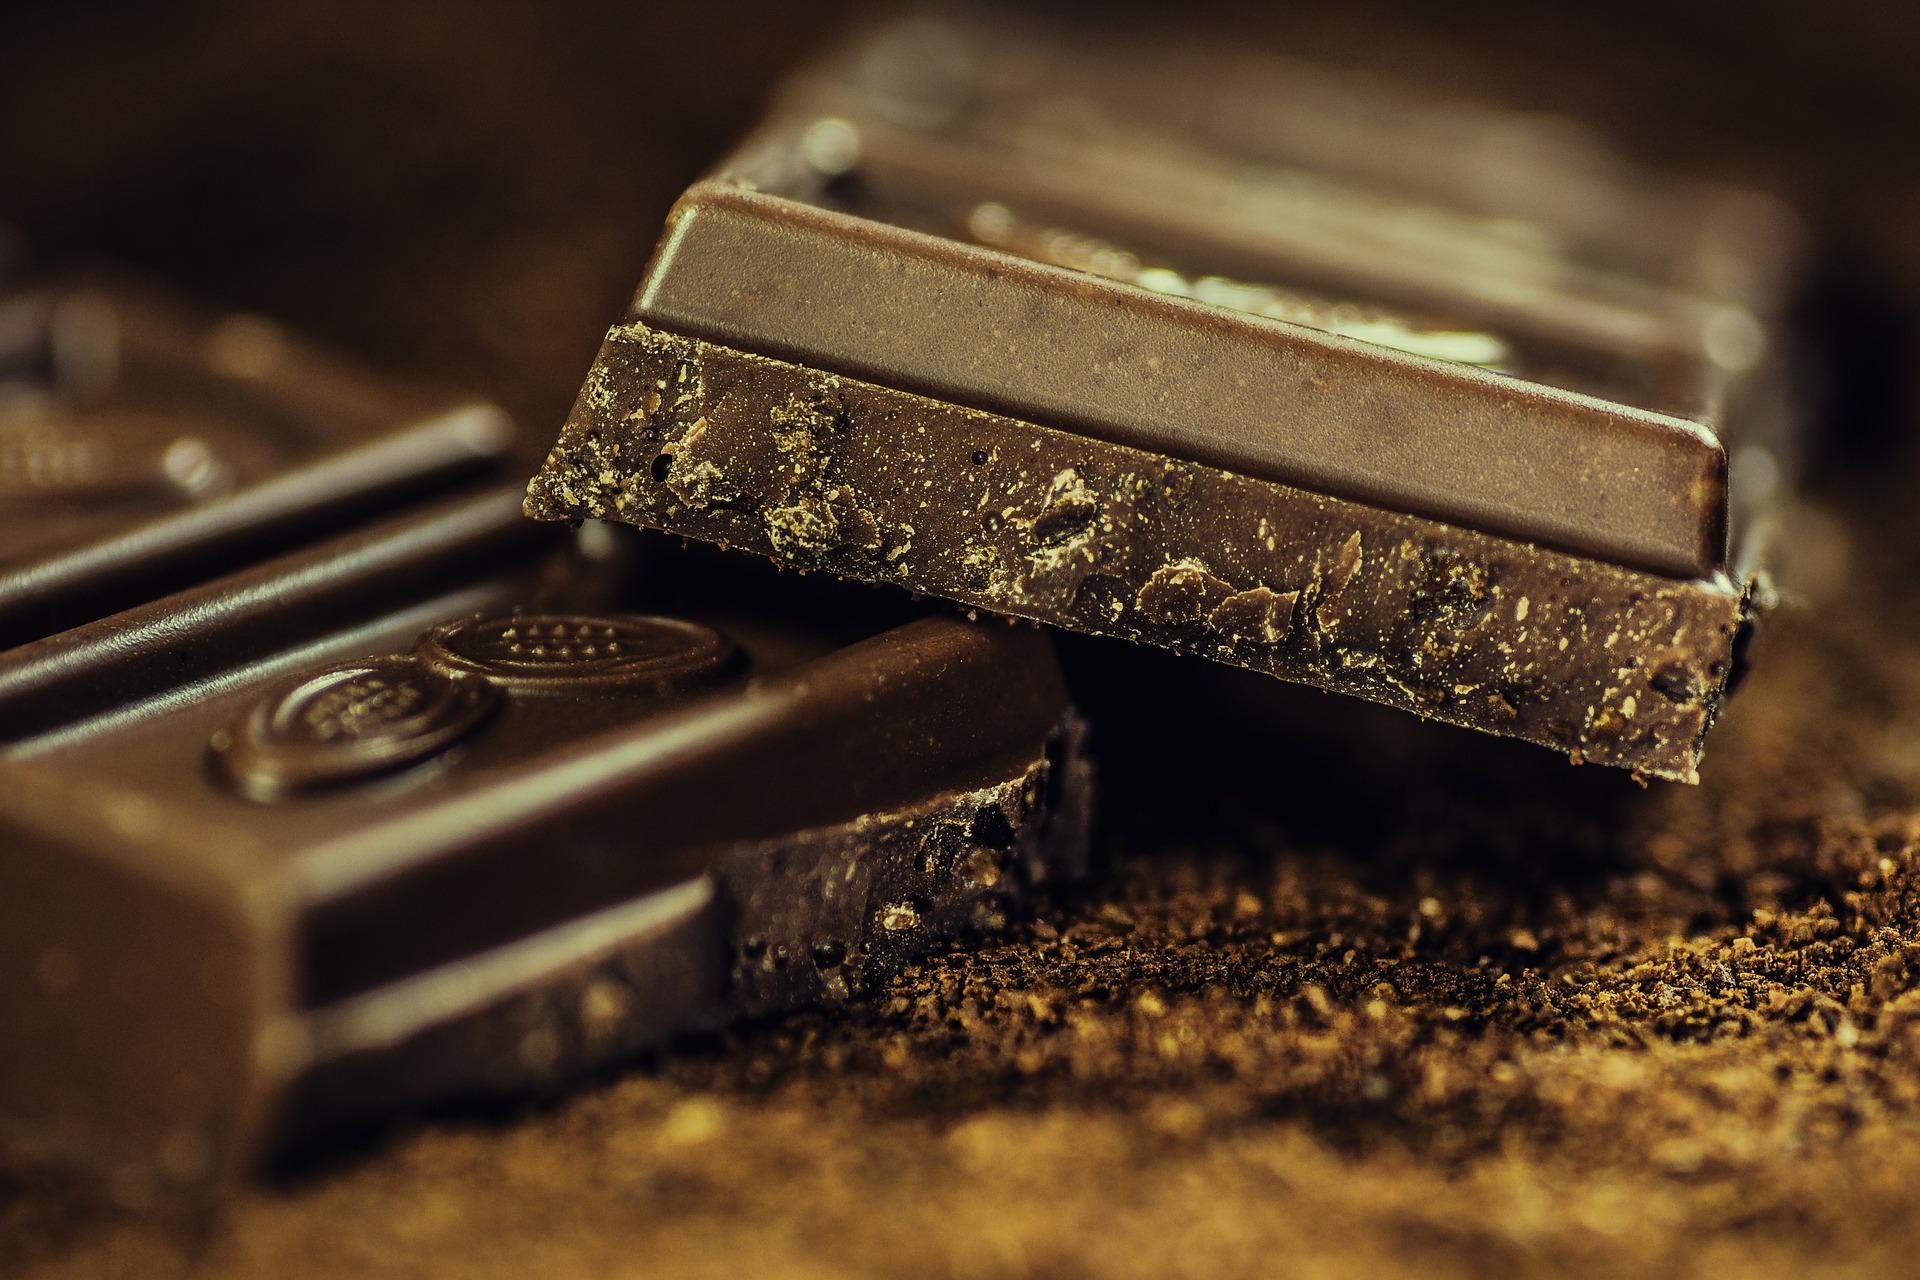 A mindennapi csokoládénk legyen meg